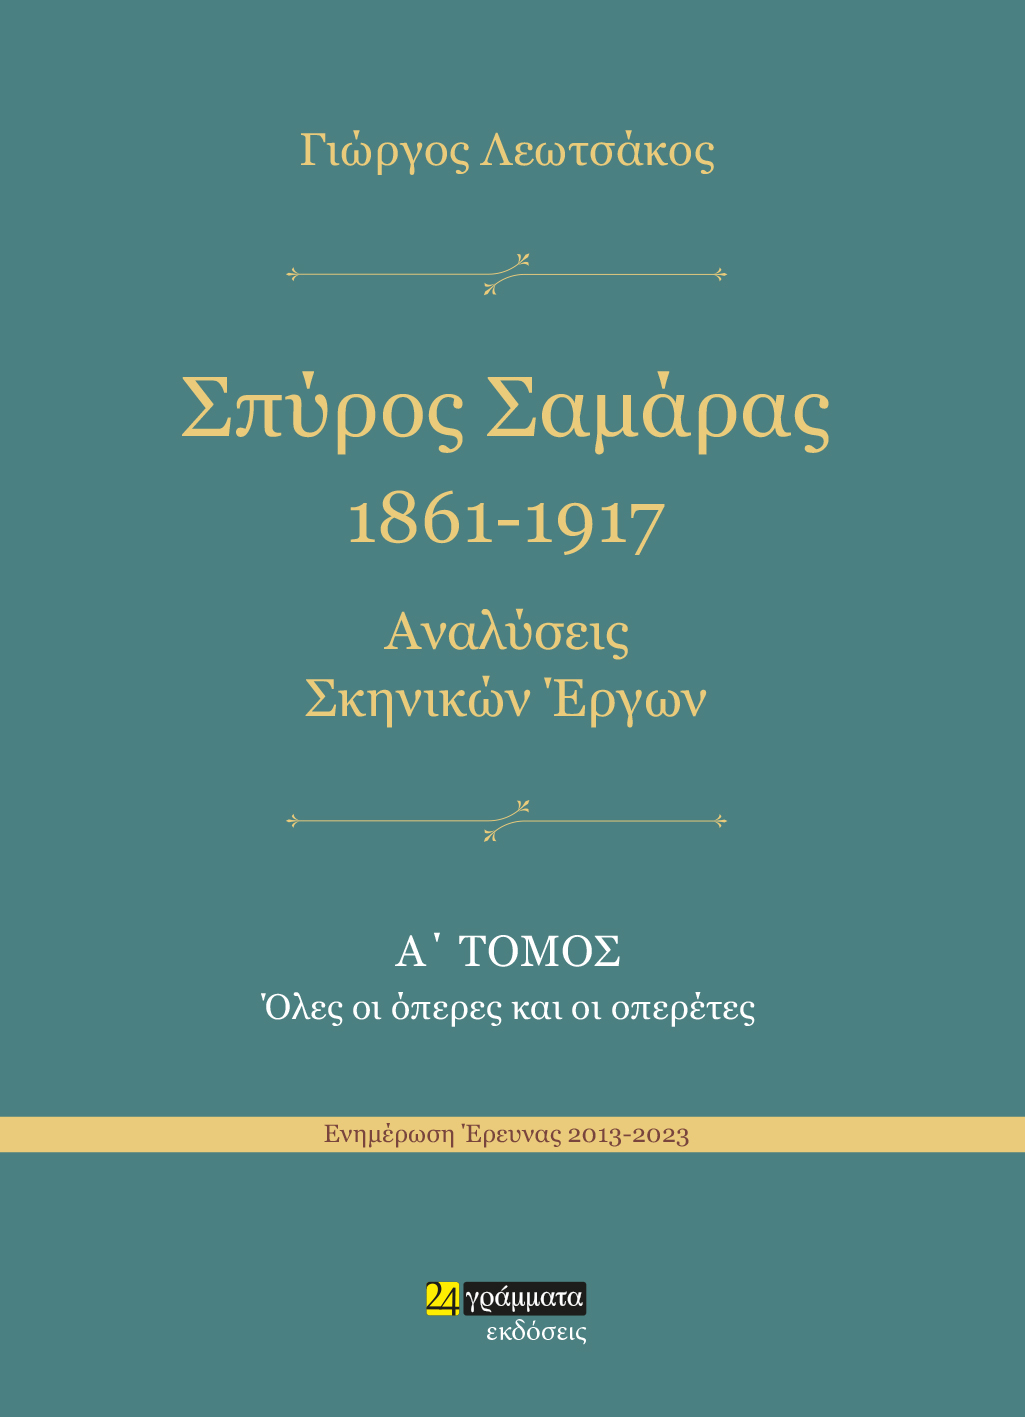 Σπύρος Σαμάρας 1861-1917. Αναλύσεις σκηνικών έργων